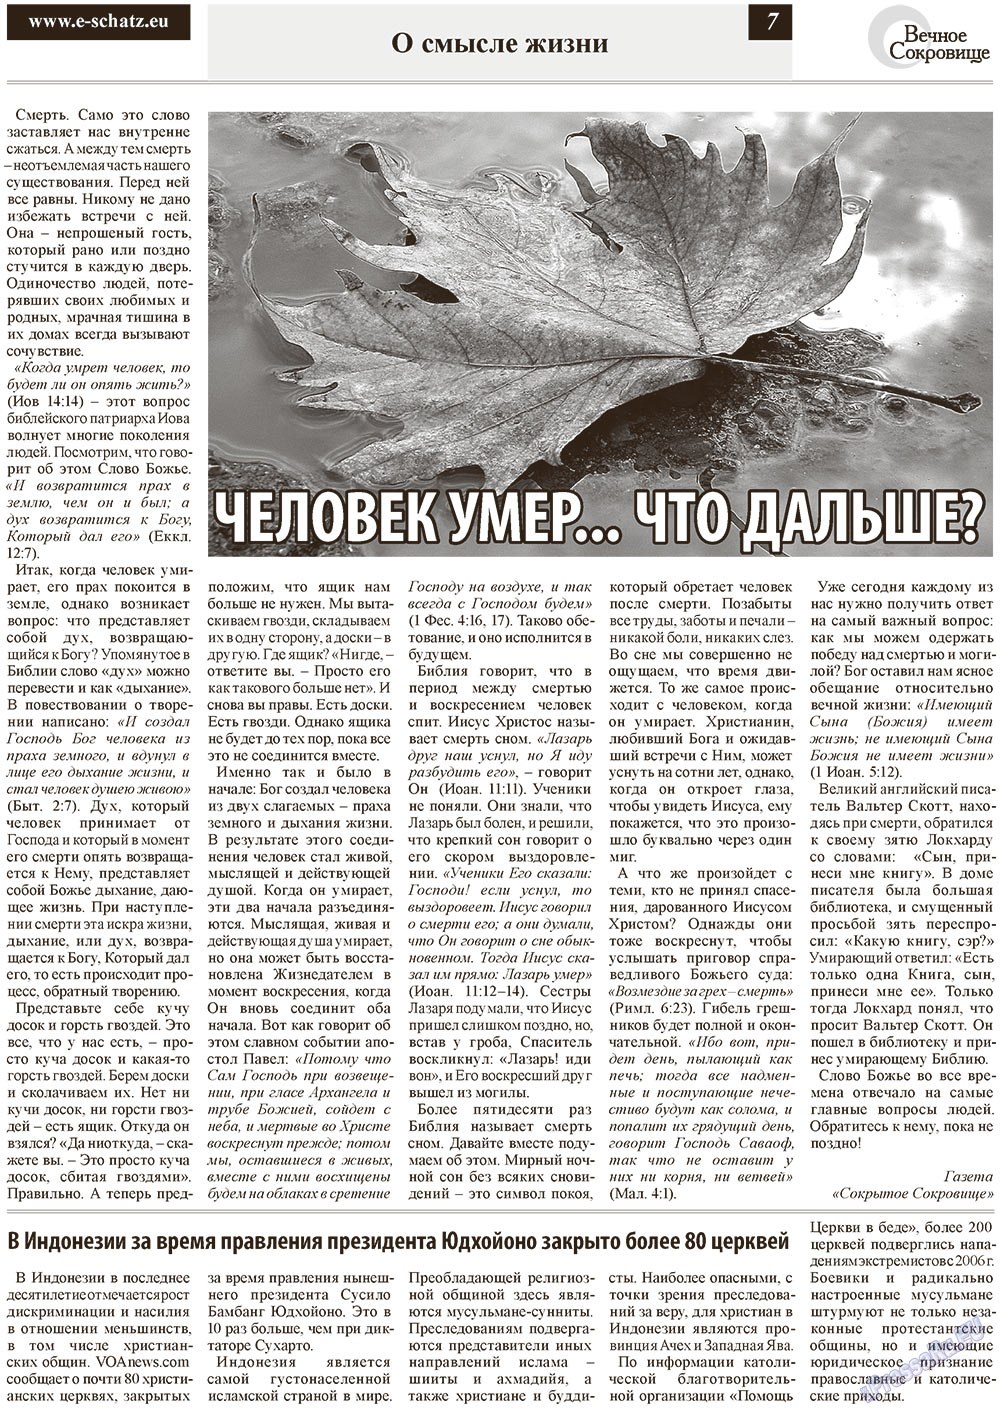 Вечное сокровище, газета. 2012 №6 стр.7